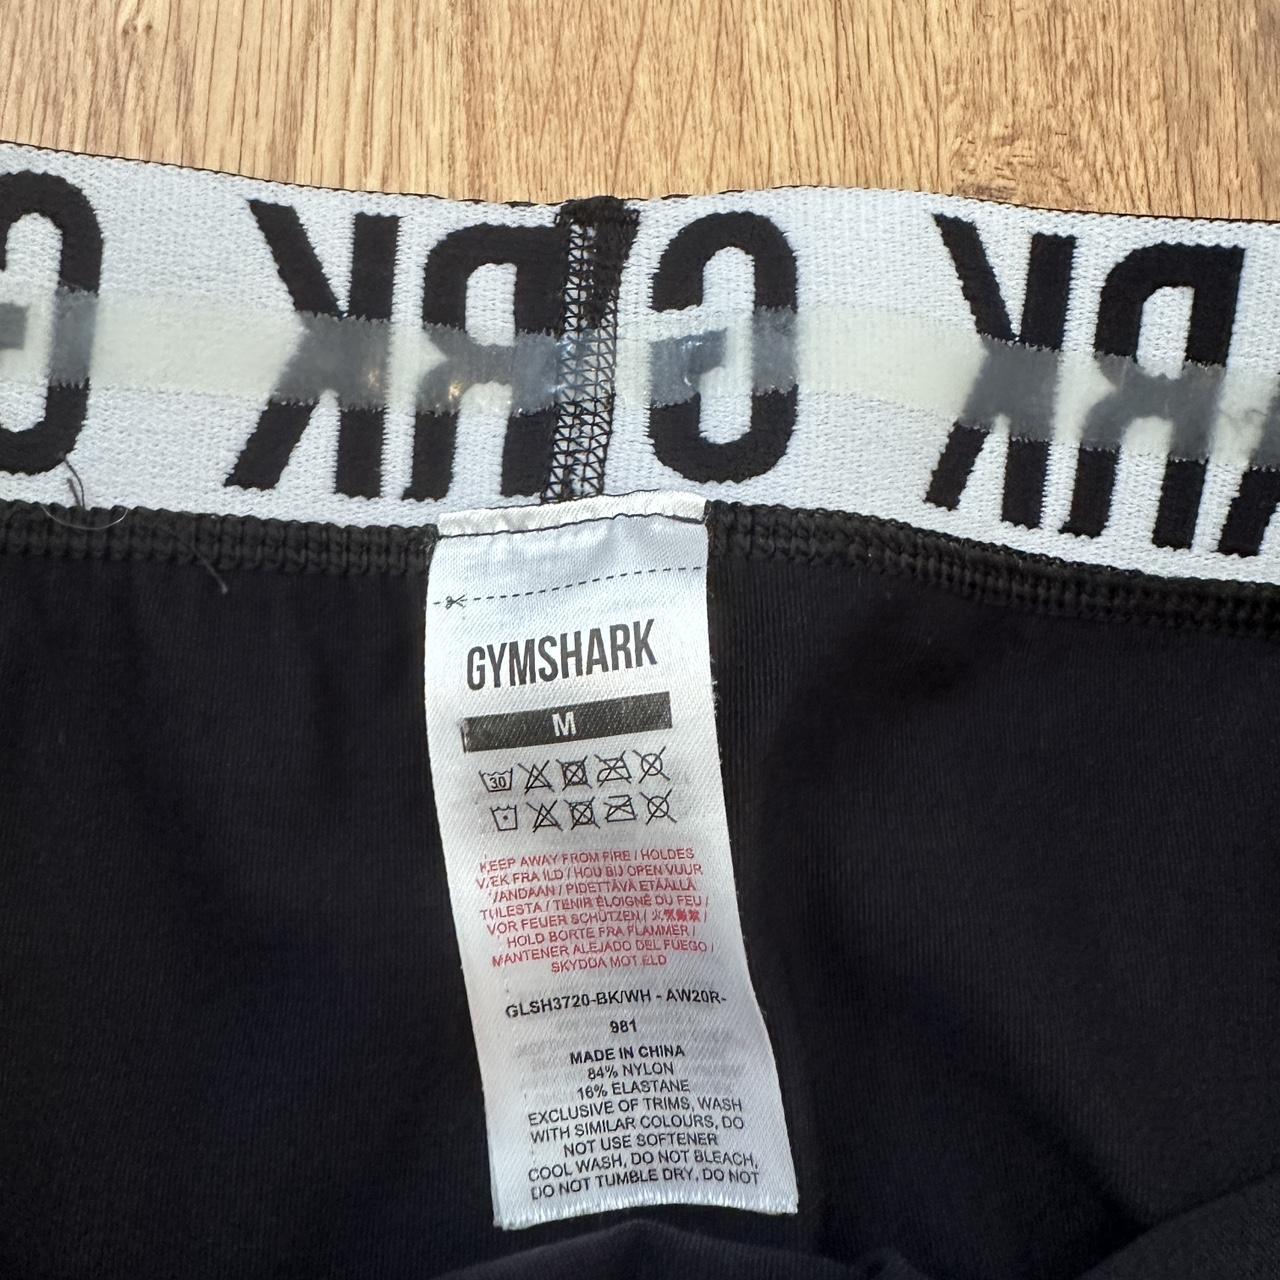 GYMSHARK black biker shorts Super soft and - Depop